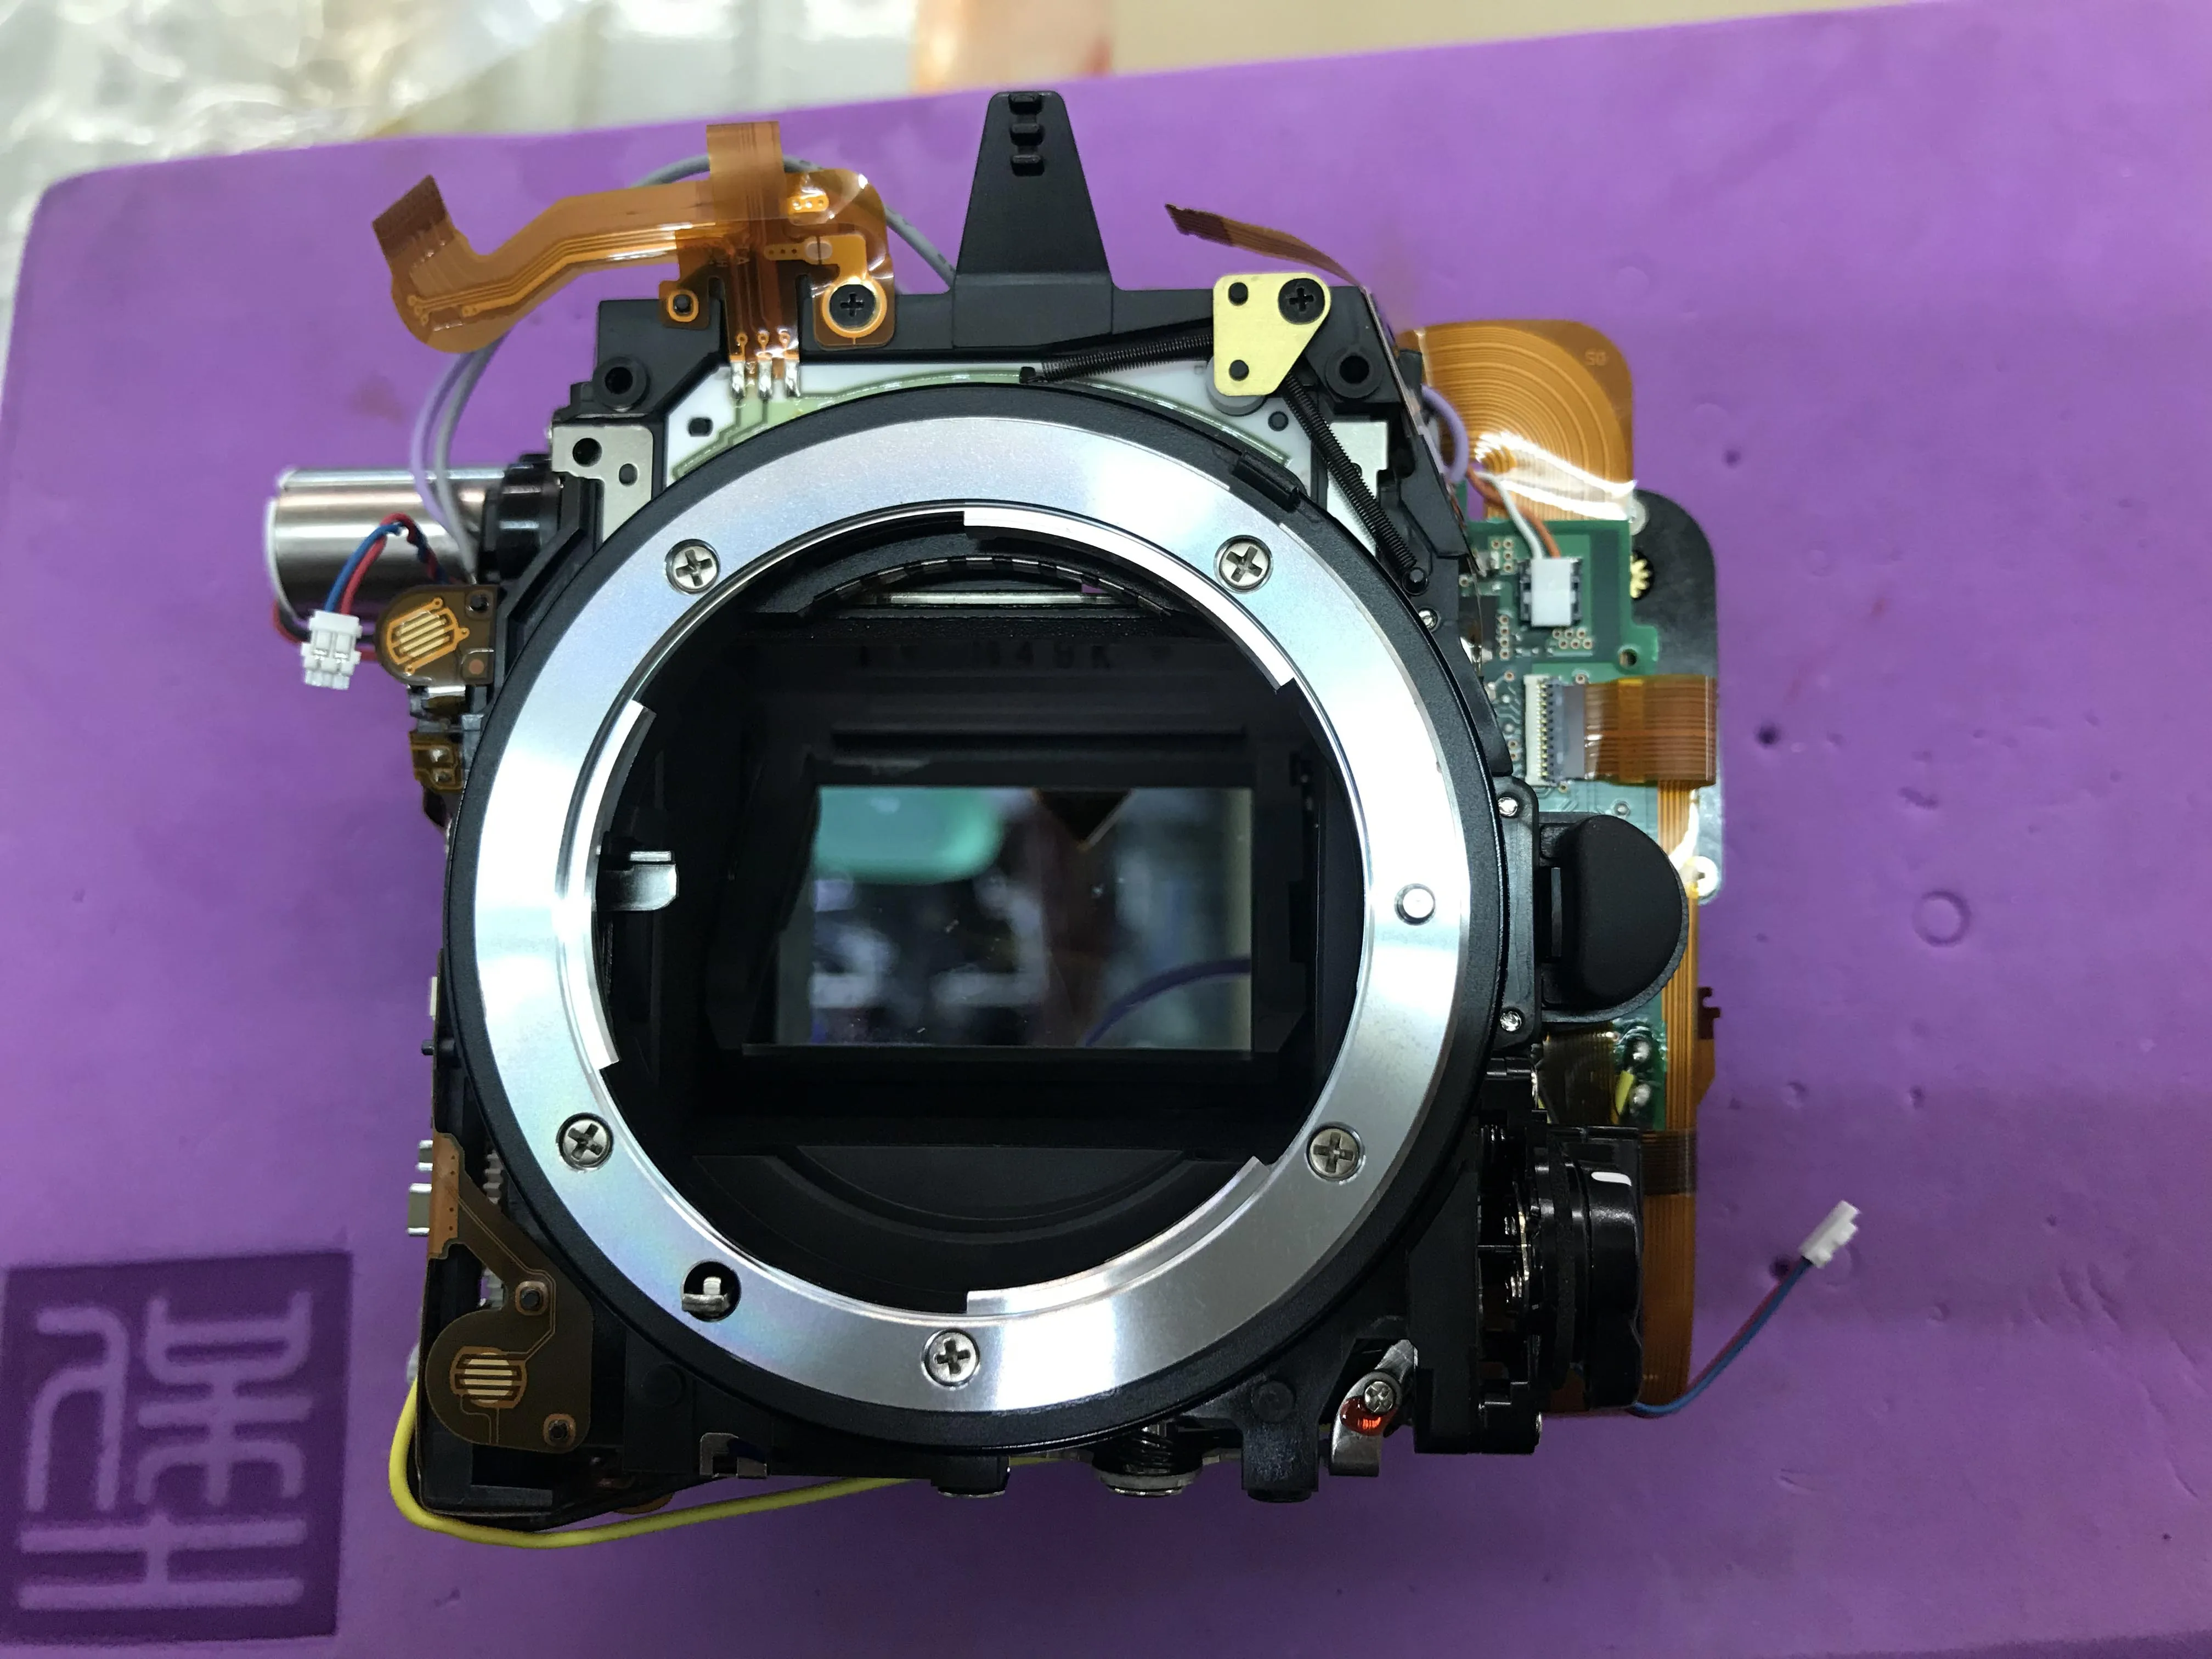 

Детали для камеры Nikon D750, маленький основной корпус с затвором, комплект для ремонта диафрагмы